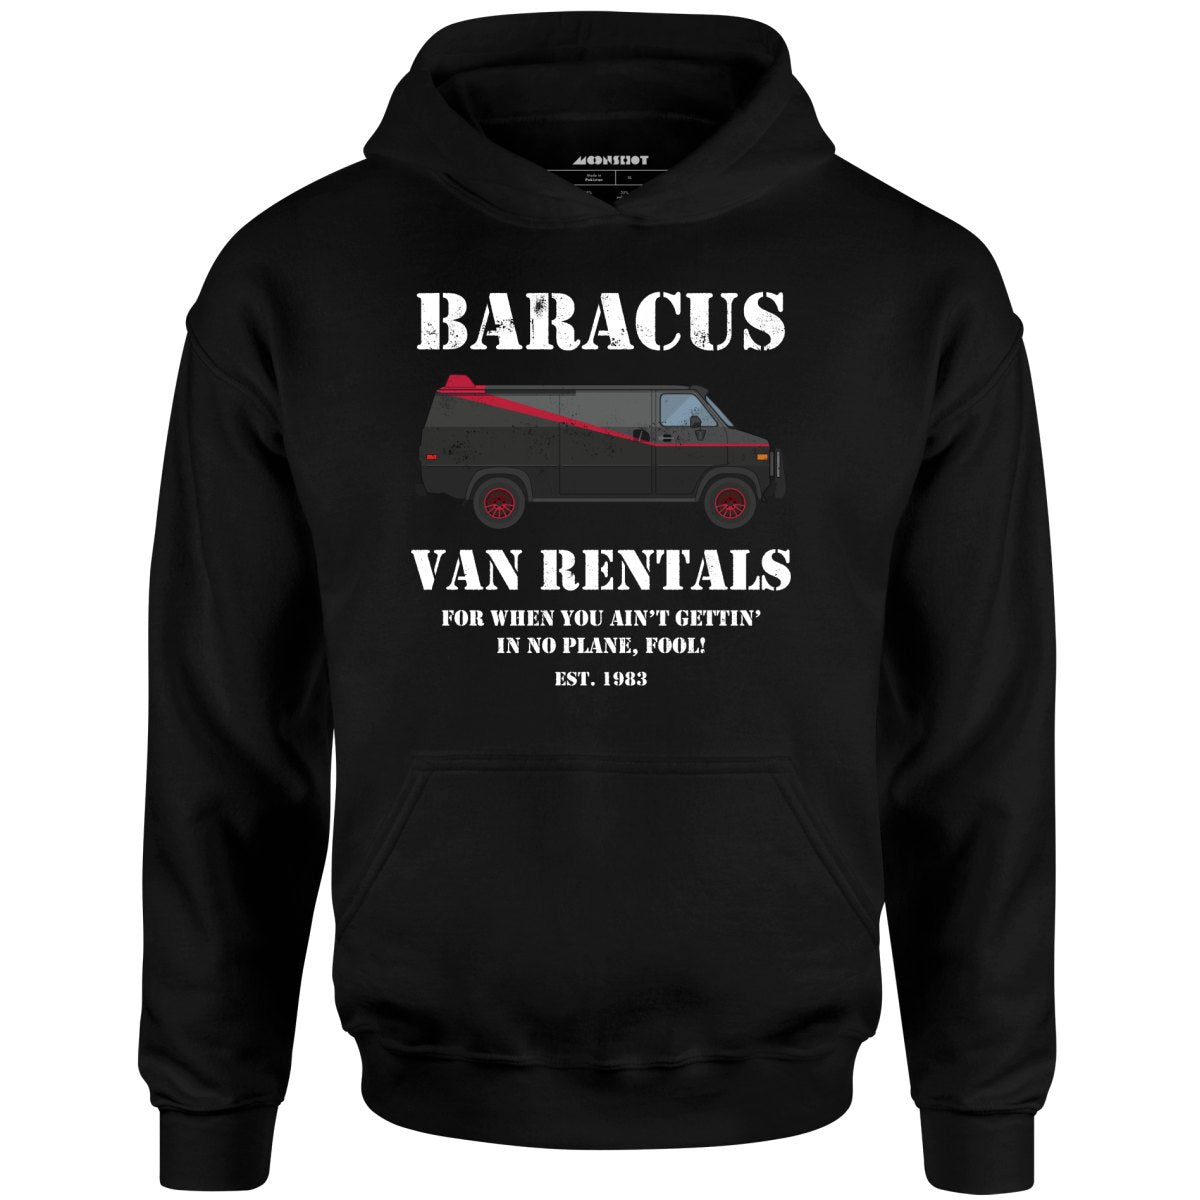 Baracus Van Rentals - Unisex Hoodie